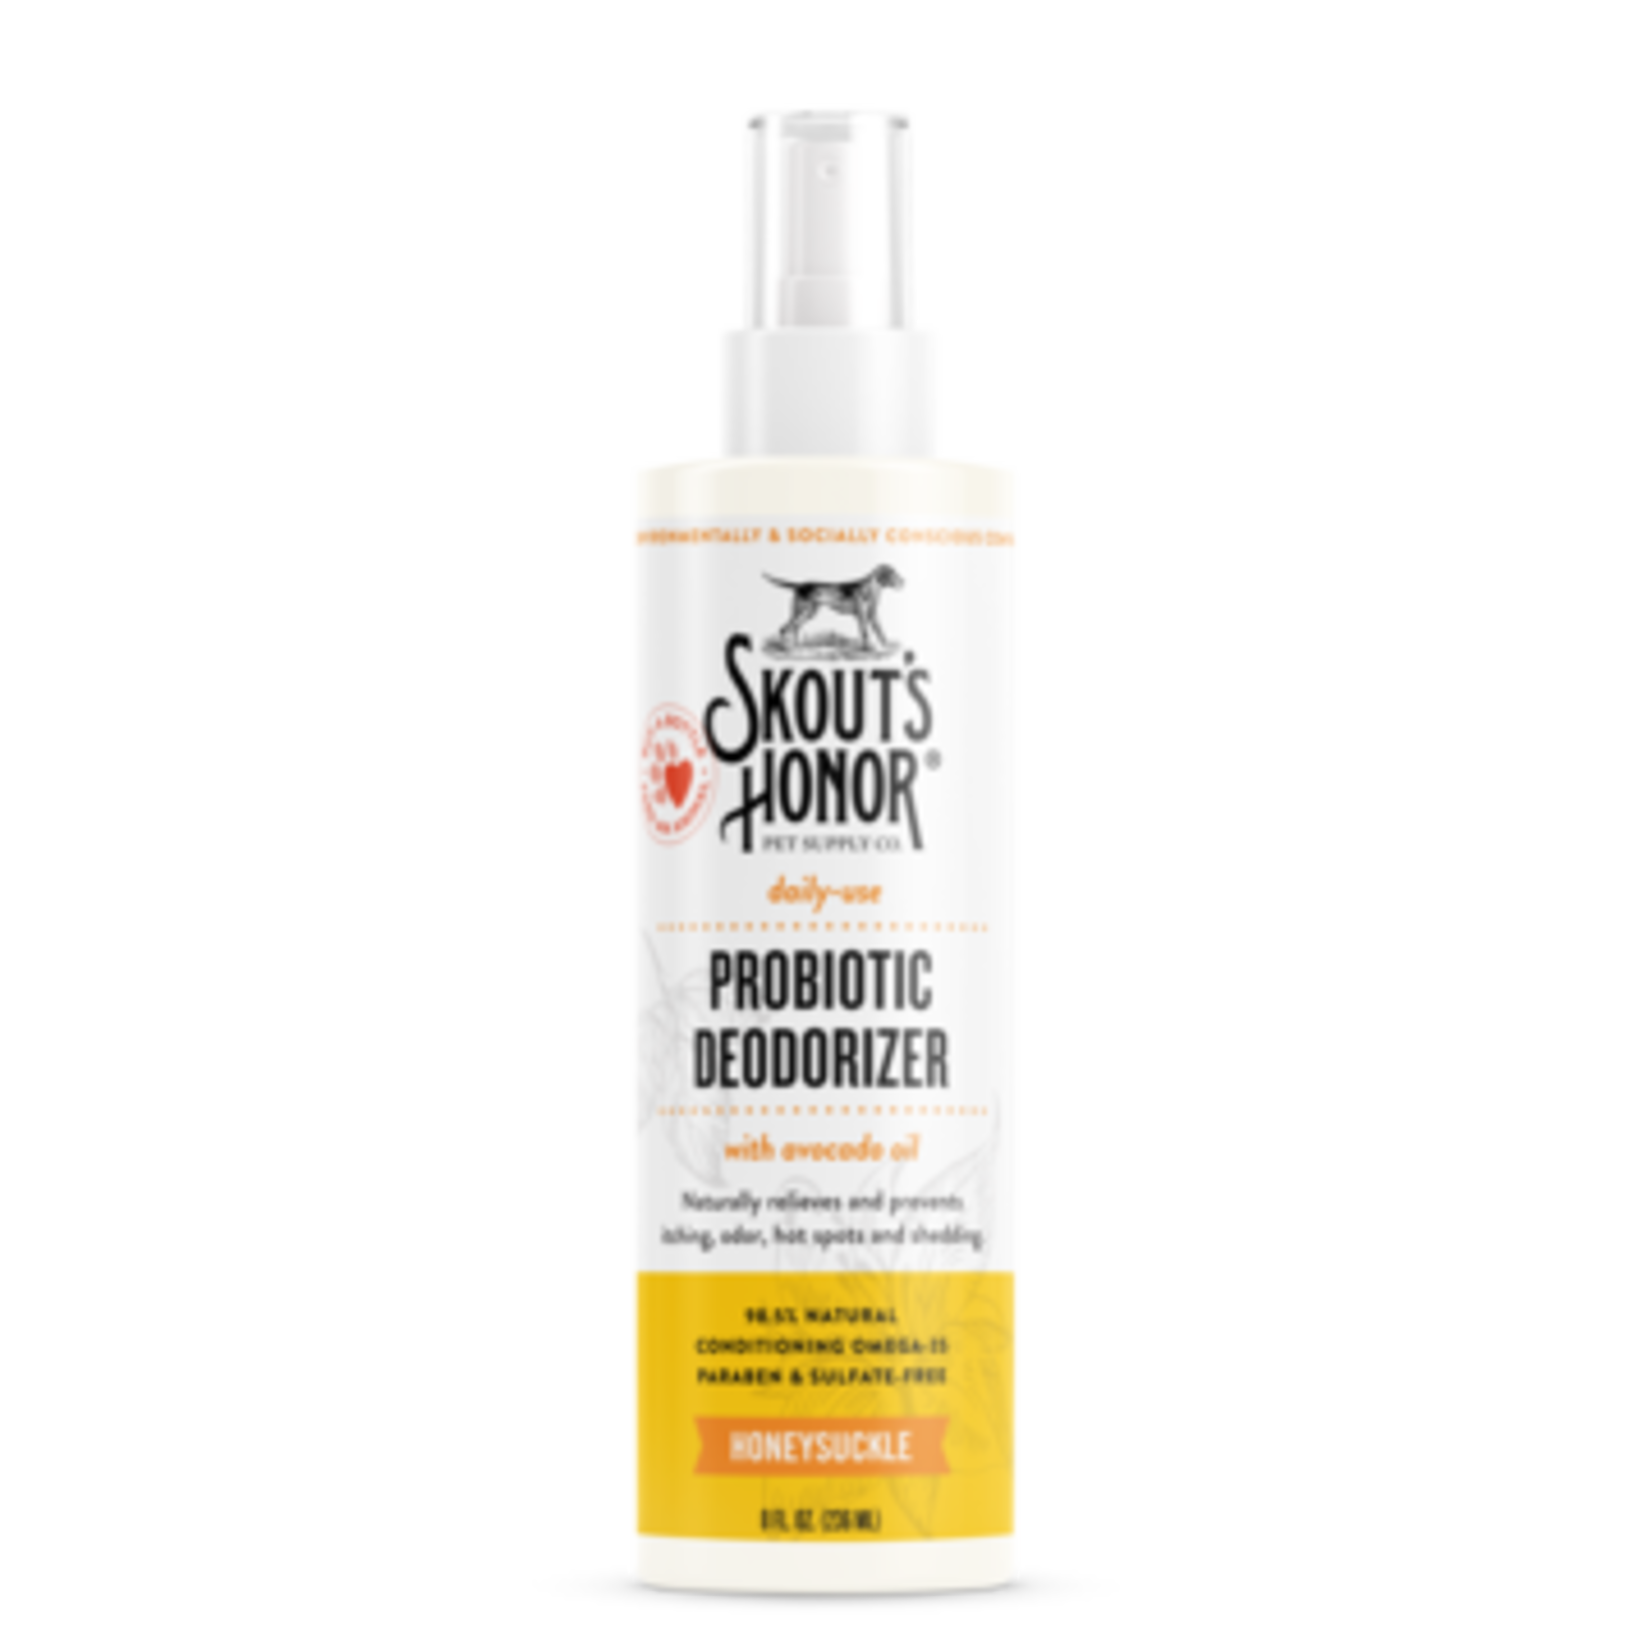 Skouts Honor SKOUTS Probiotic Deodorizer Honeysuckle 8oz